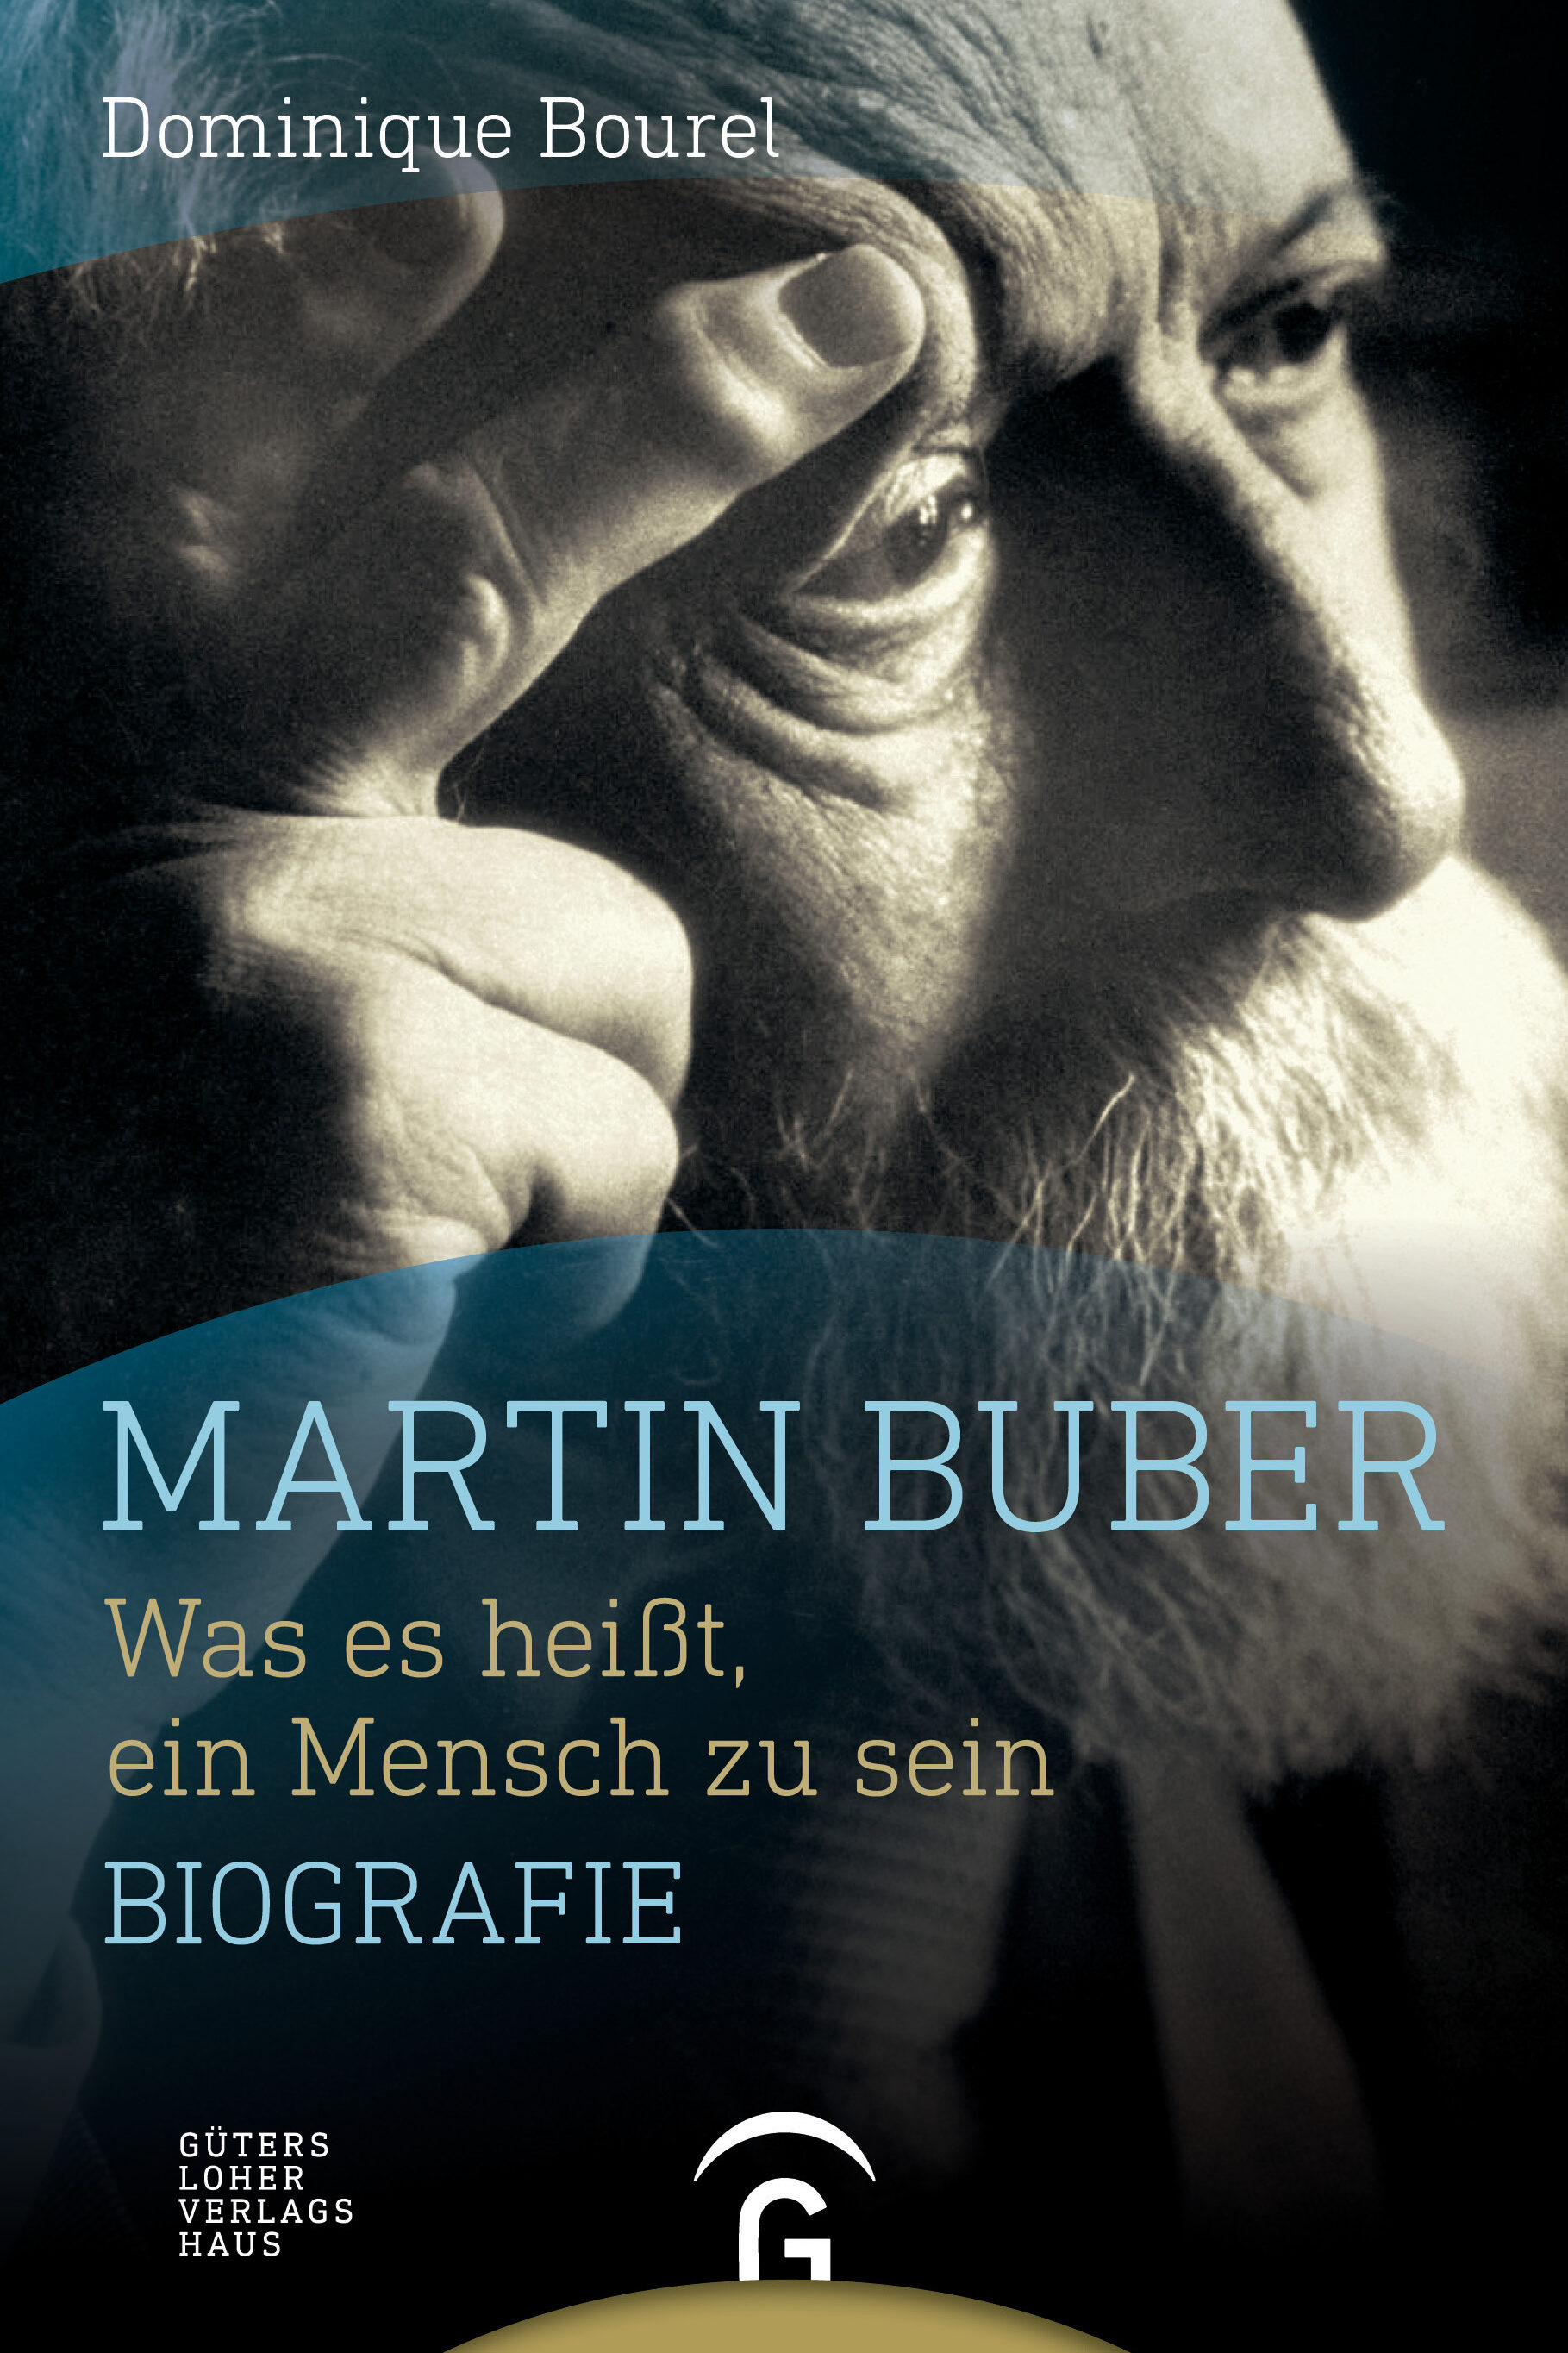 martin buber dominique bourel sachbuch gesellschaft gesellschaftsentwicklung soziologie philosophie psychologie biografie